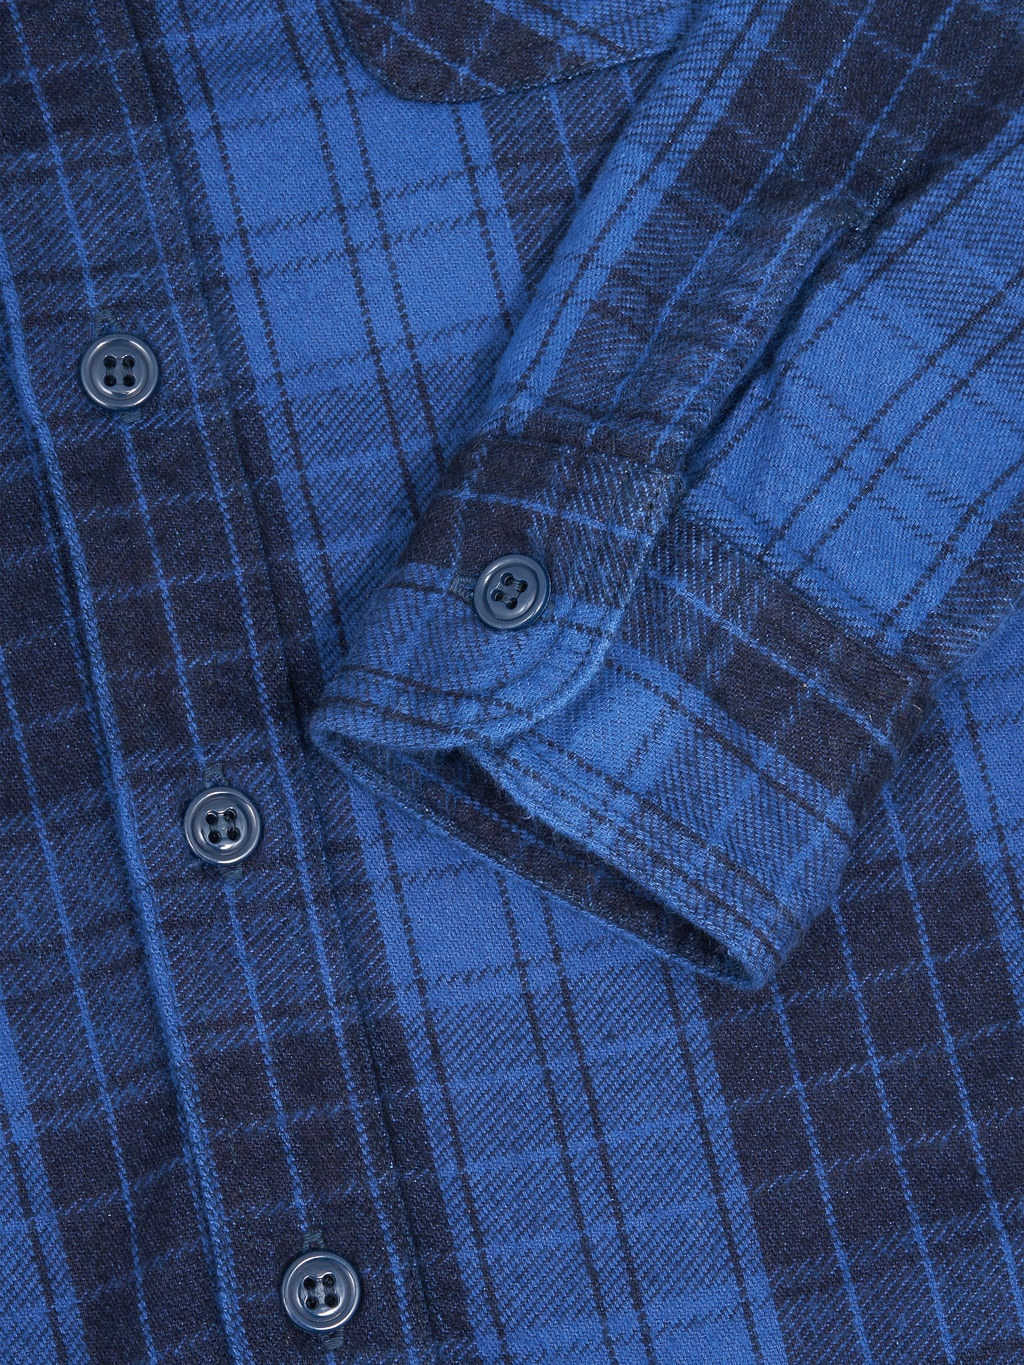 Momotaro original indigo twill check flannel shirt cuff stitching